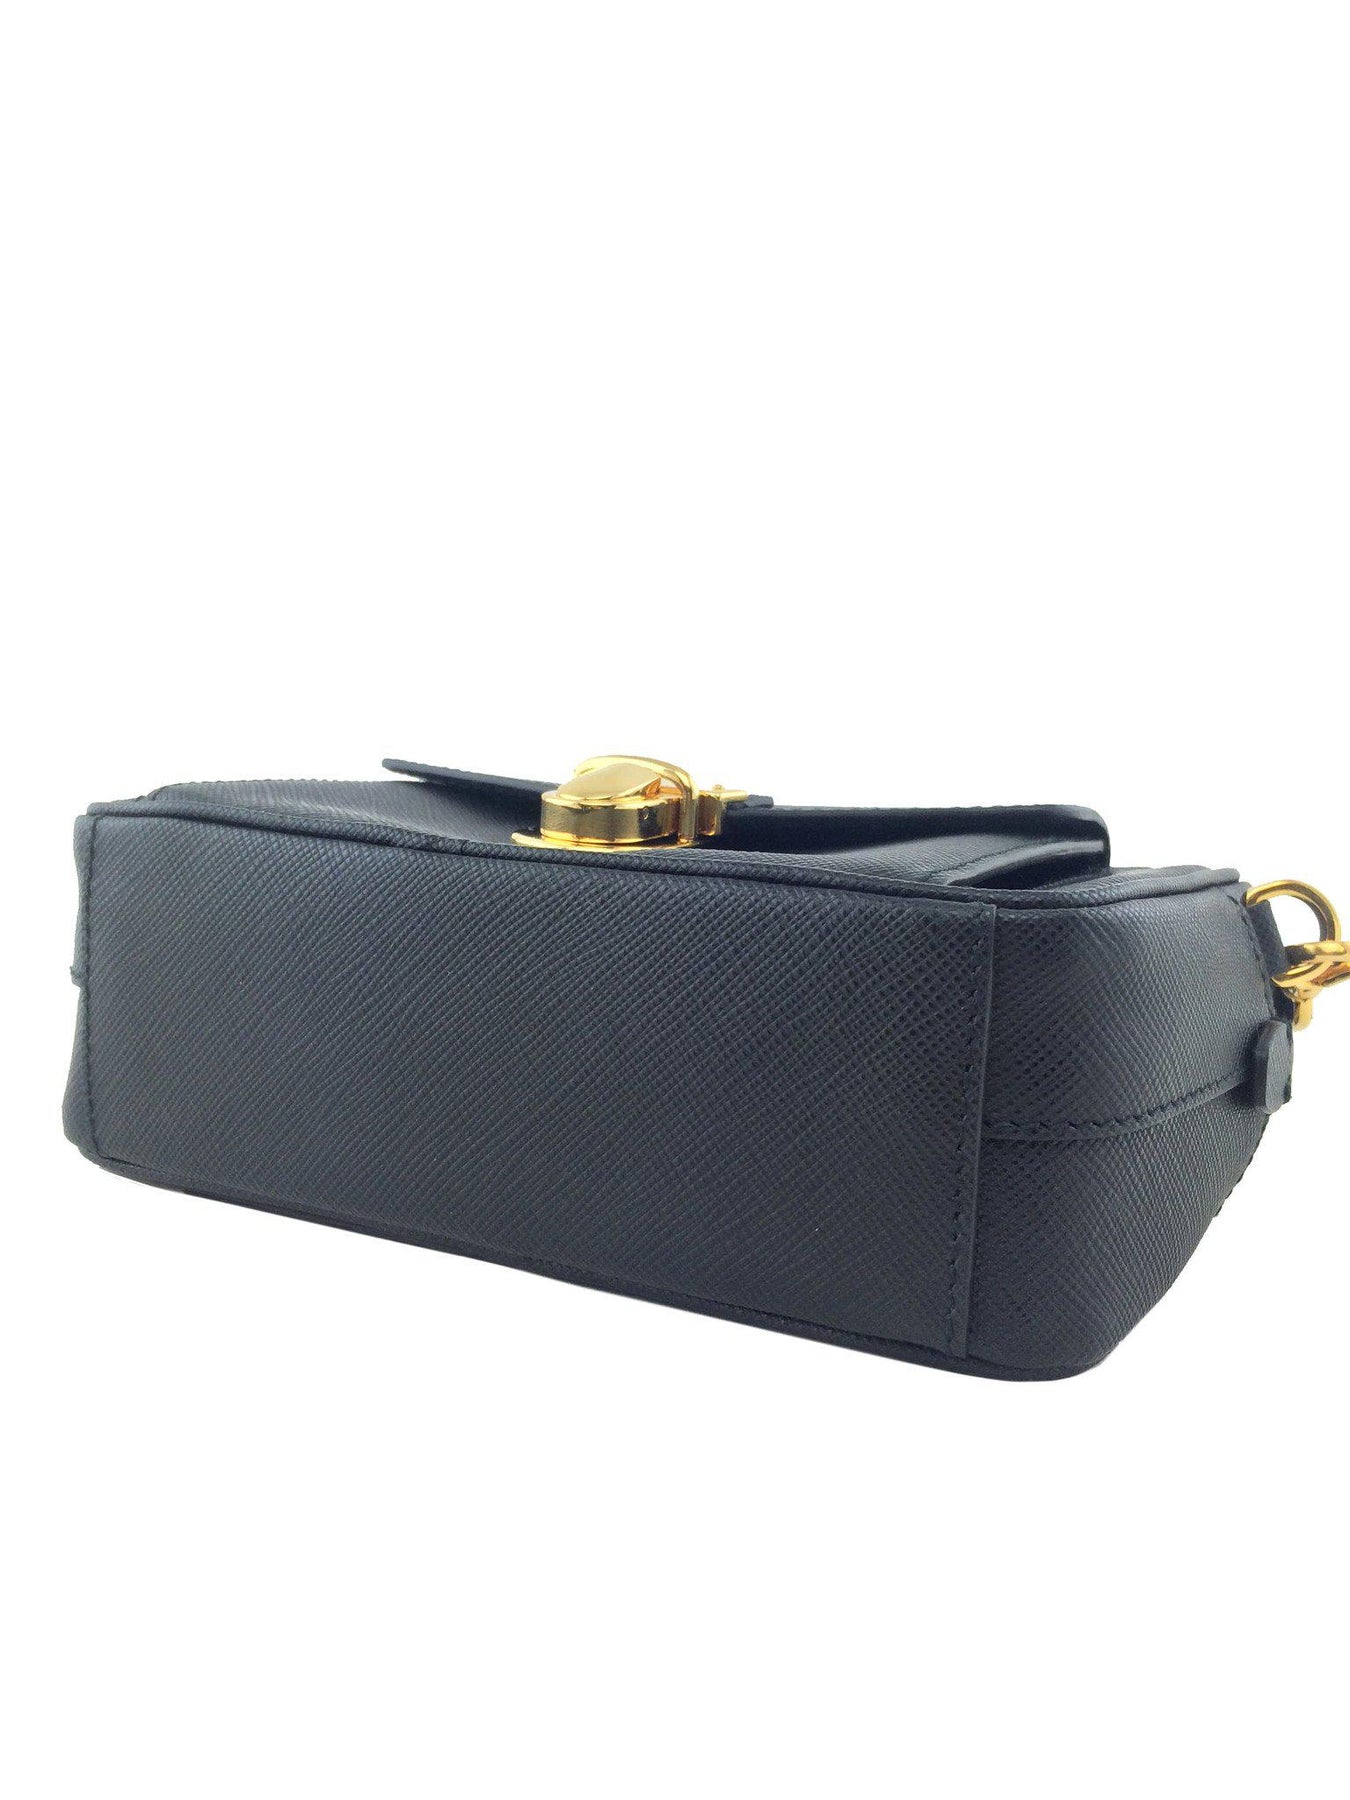 Prada Saffiano Leather Small Crossbody Bag - Consigned Designs